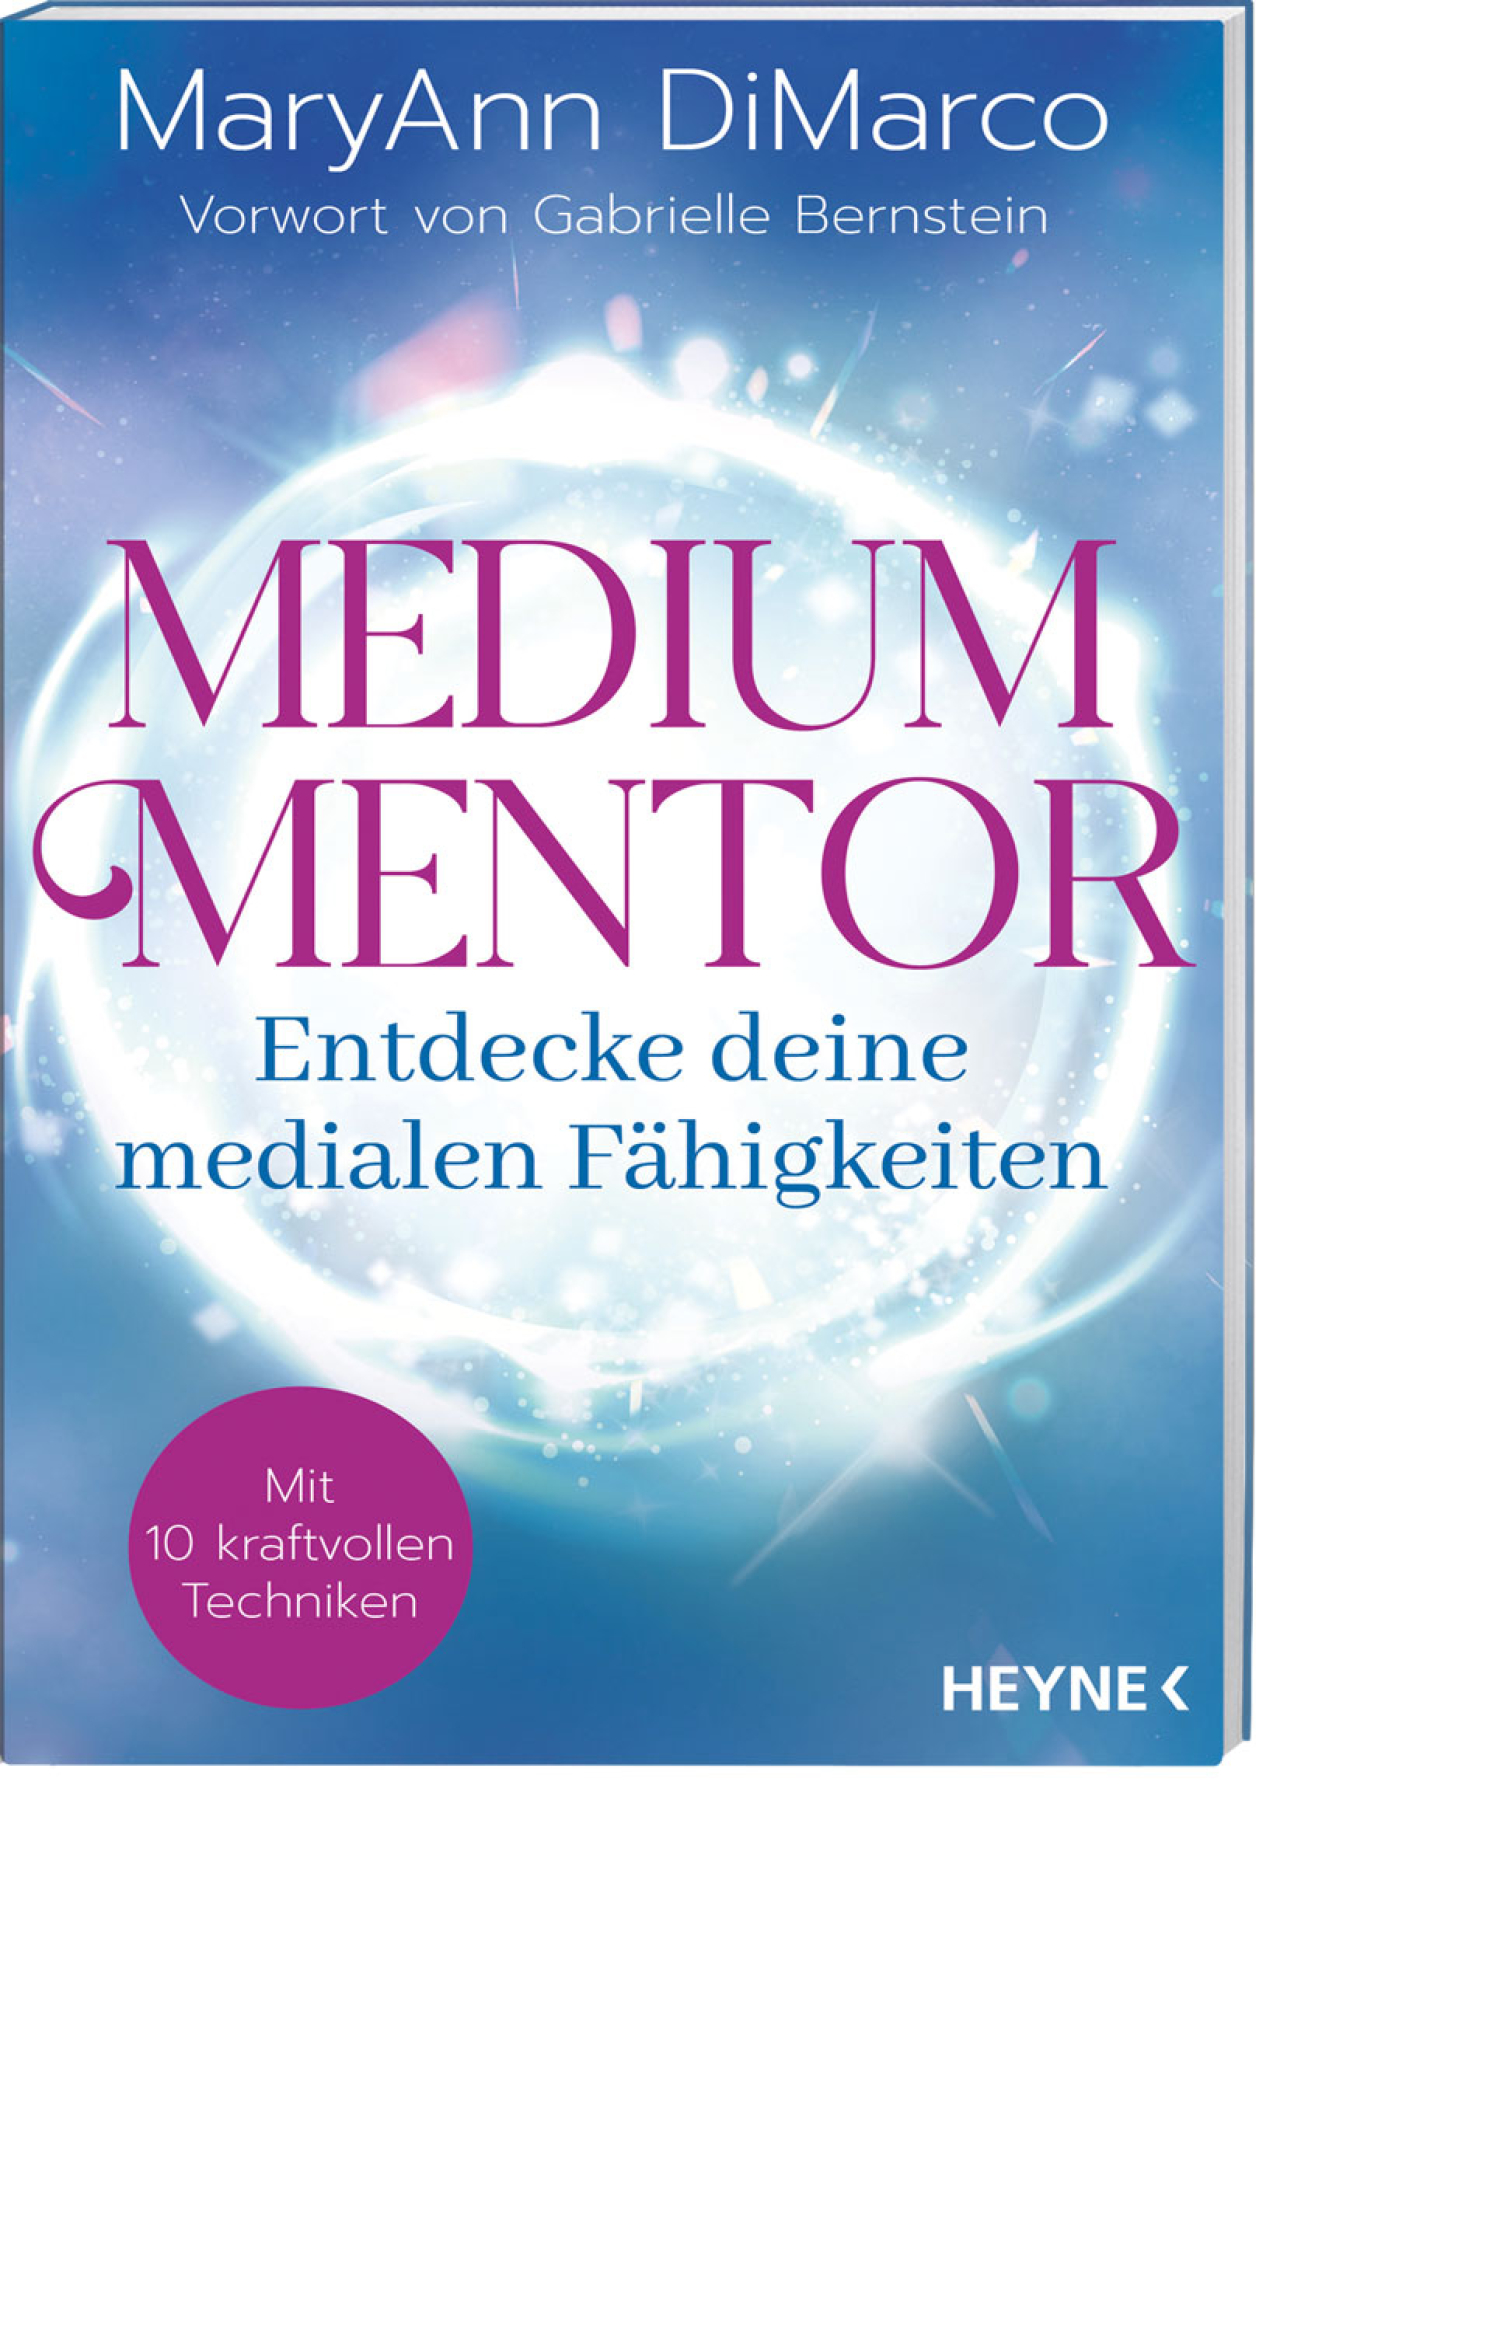 Medium Mentor, Produktbild 1